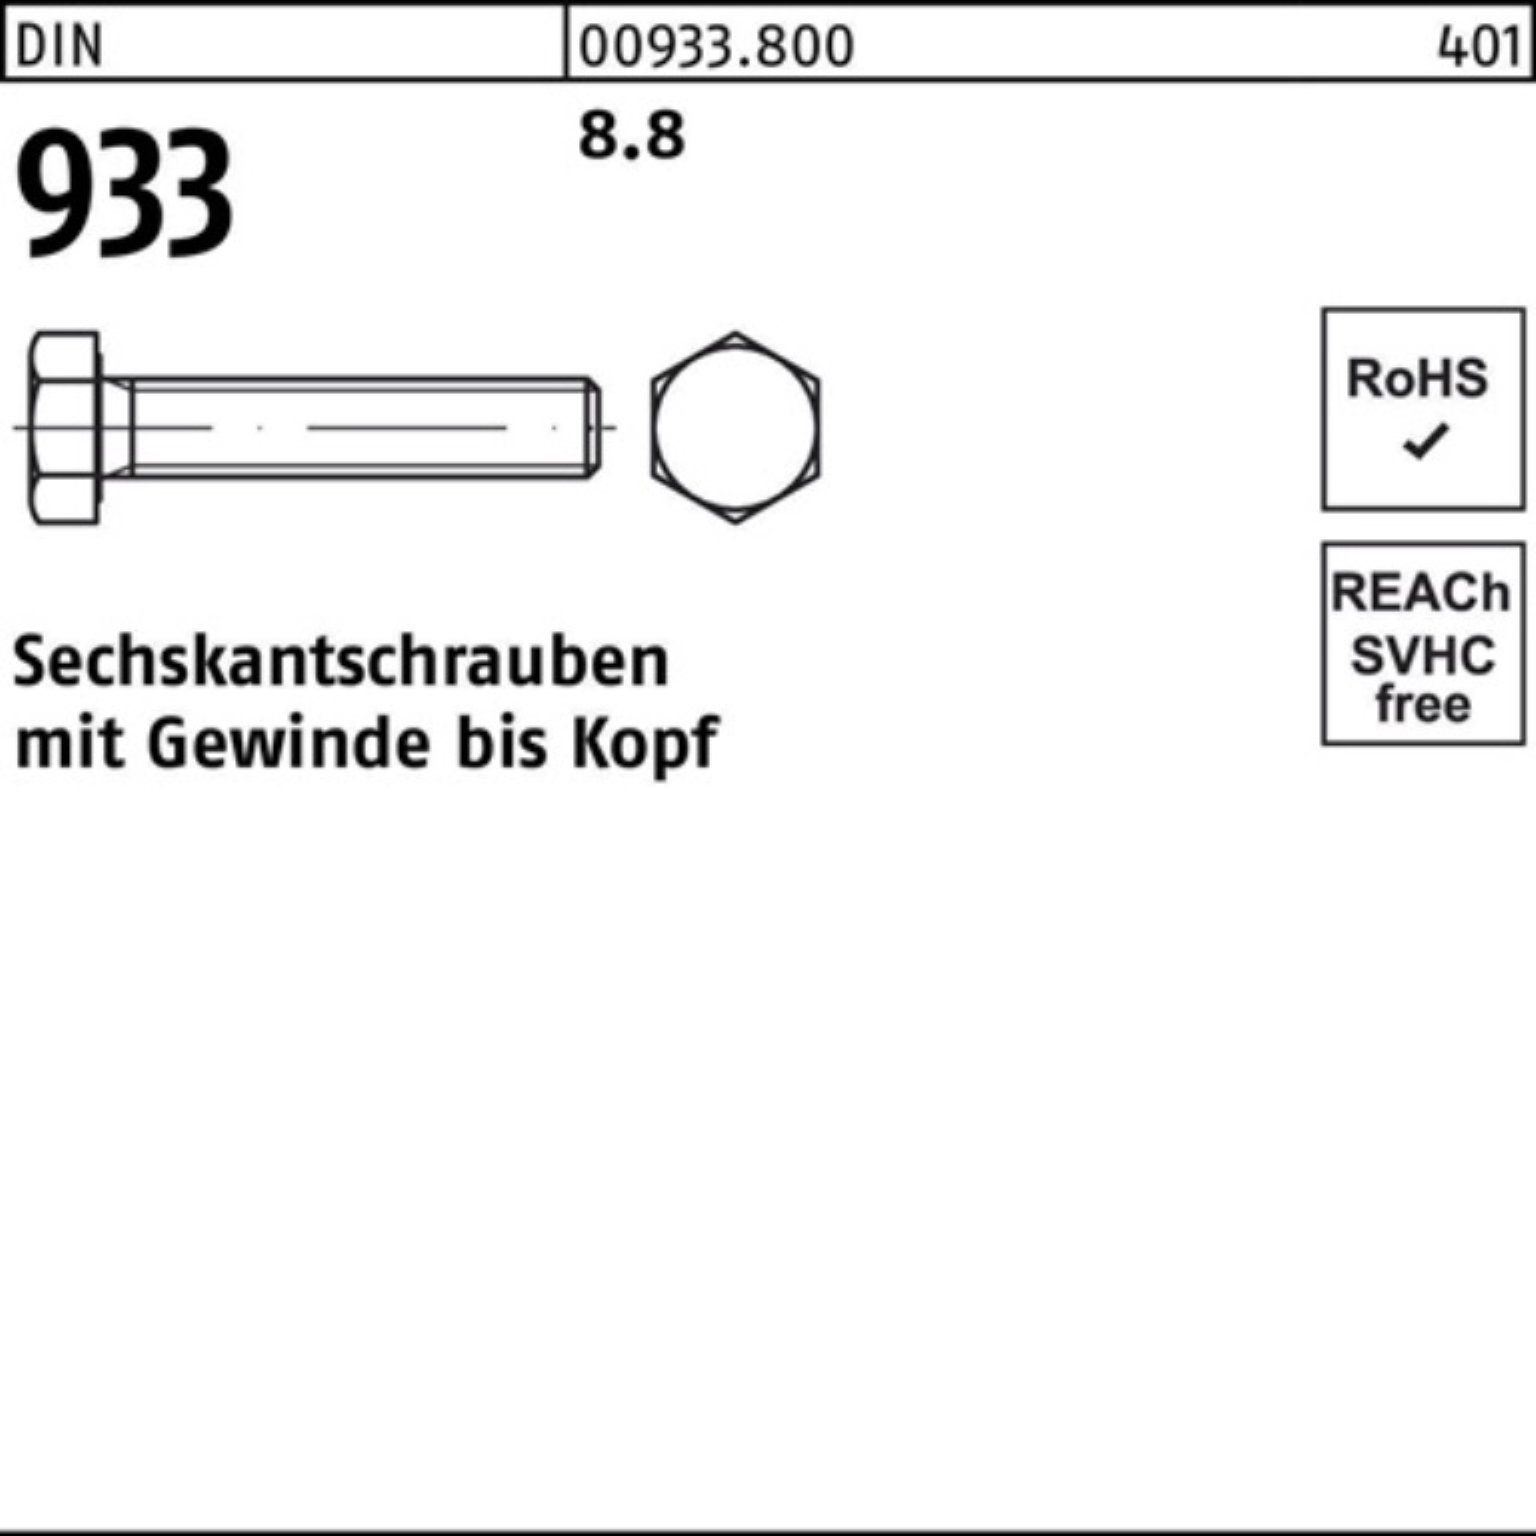 500 Sechskantschraube 8.8 6 933 DIN 8 M6x Sechskantschraube 500er Reyher Stück Pack VG DIN 933